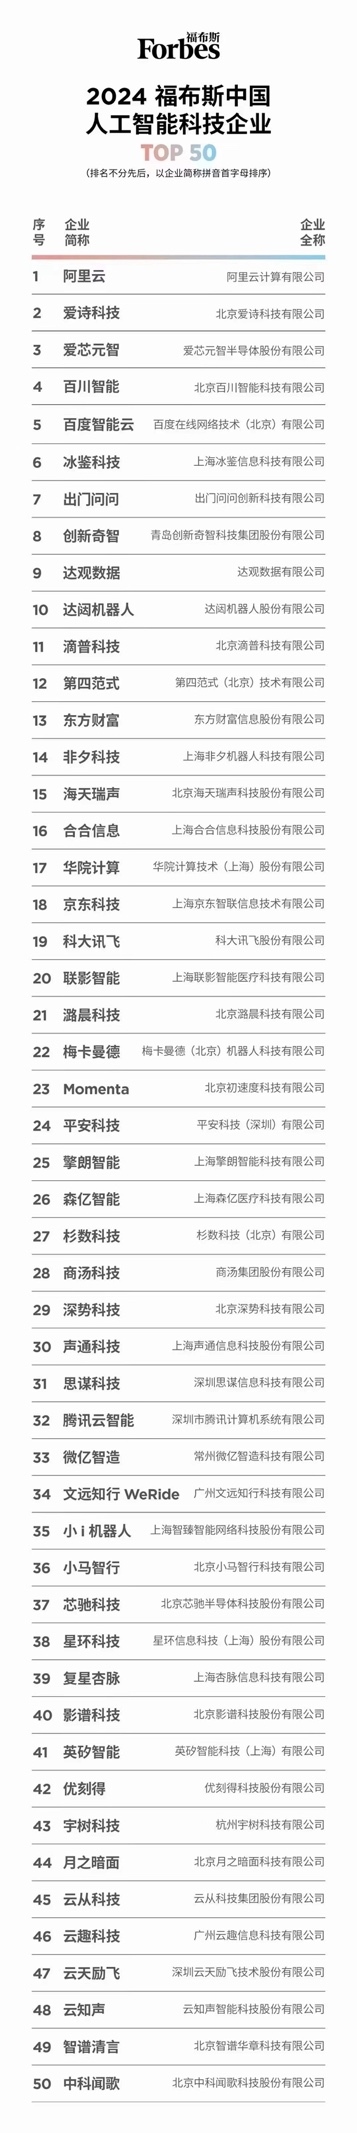 第四范式(6682.HK)入选“2024福布斯中国人工智能科技企业”